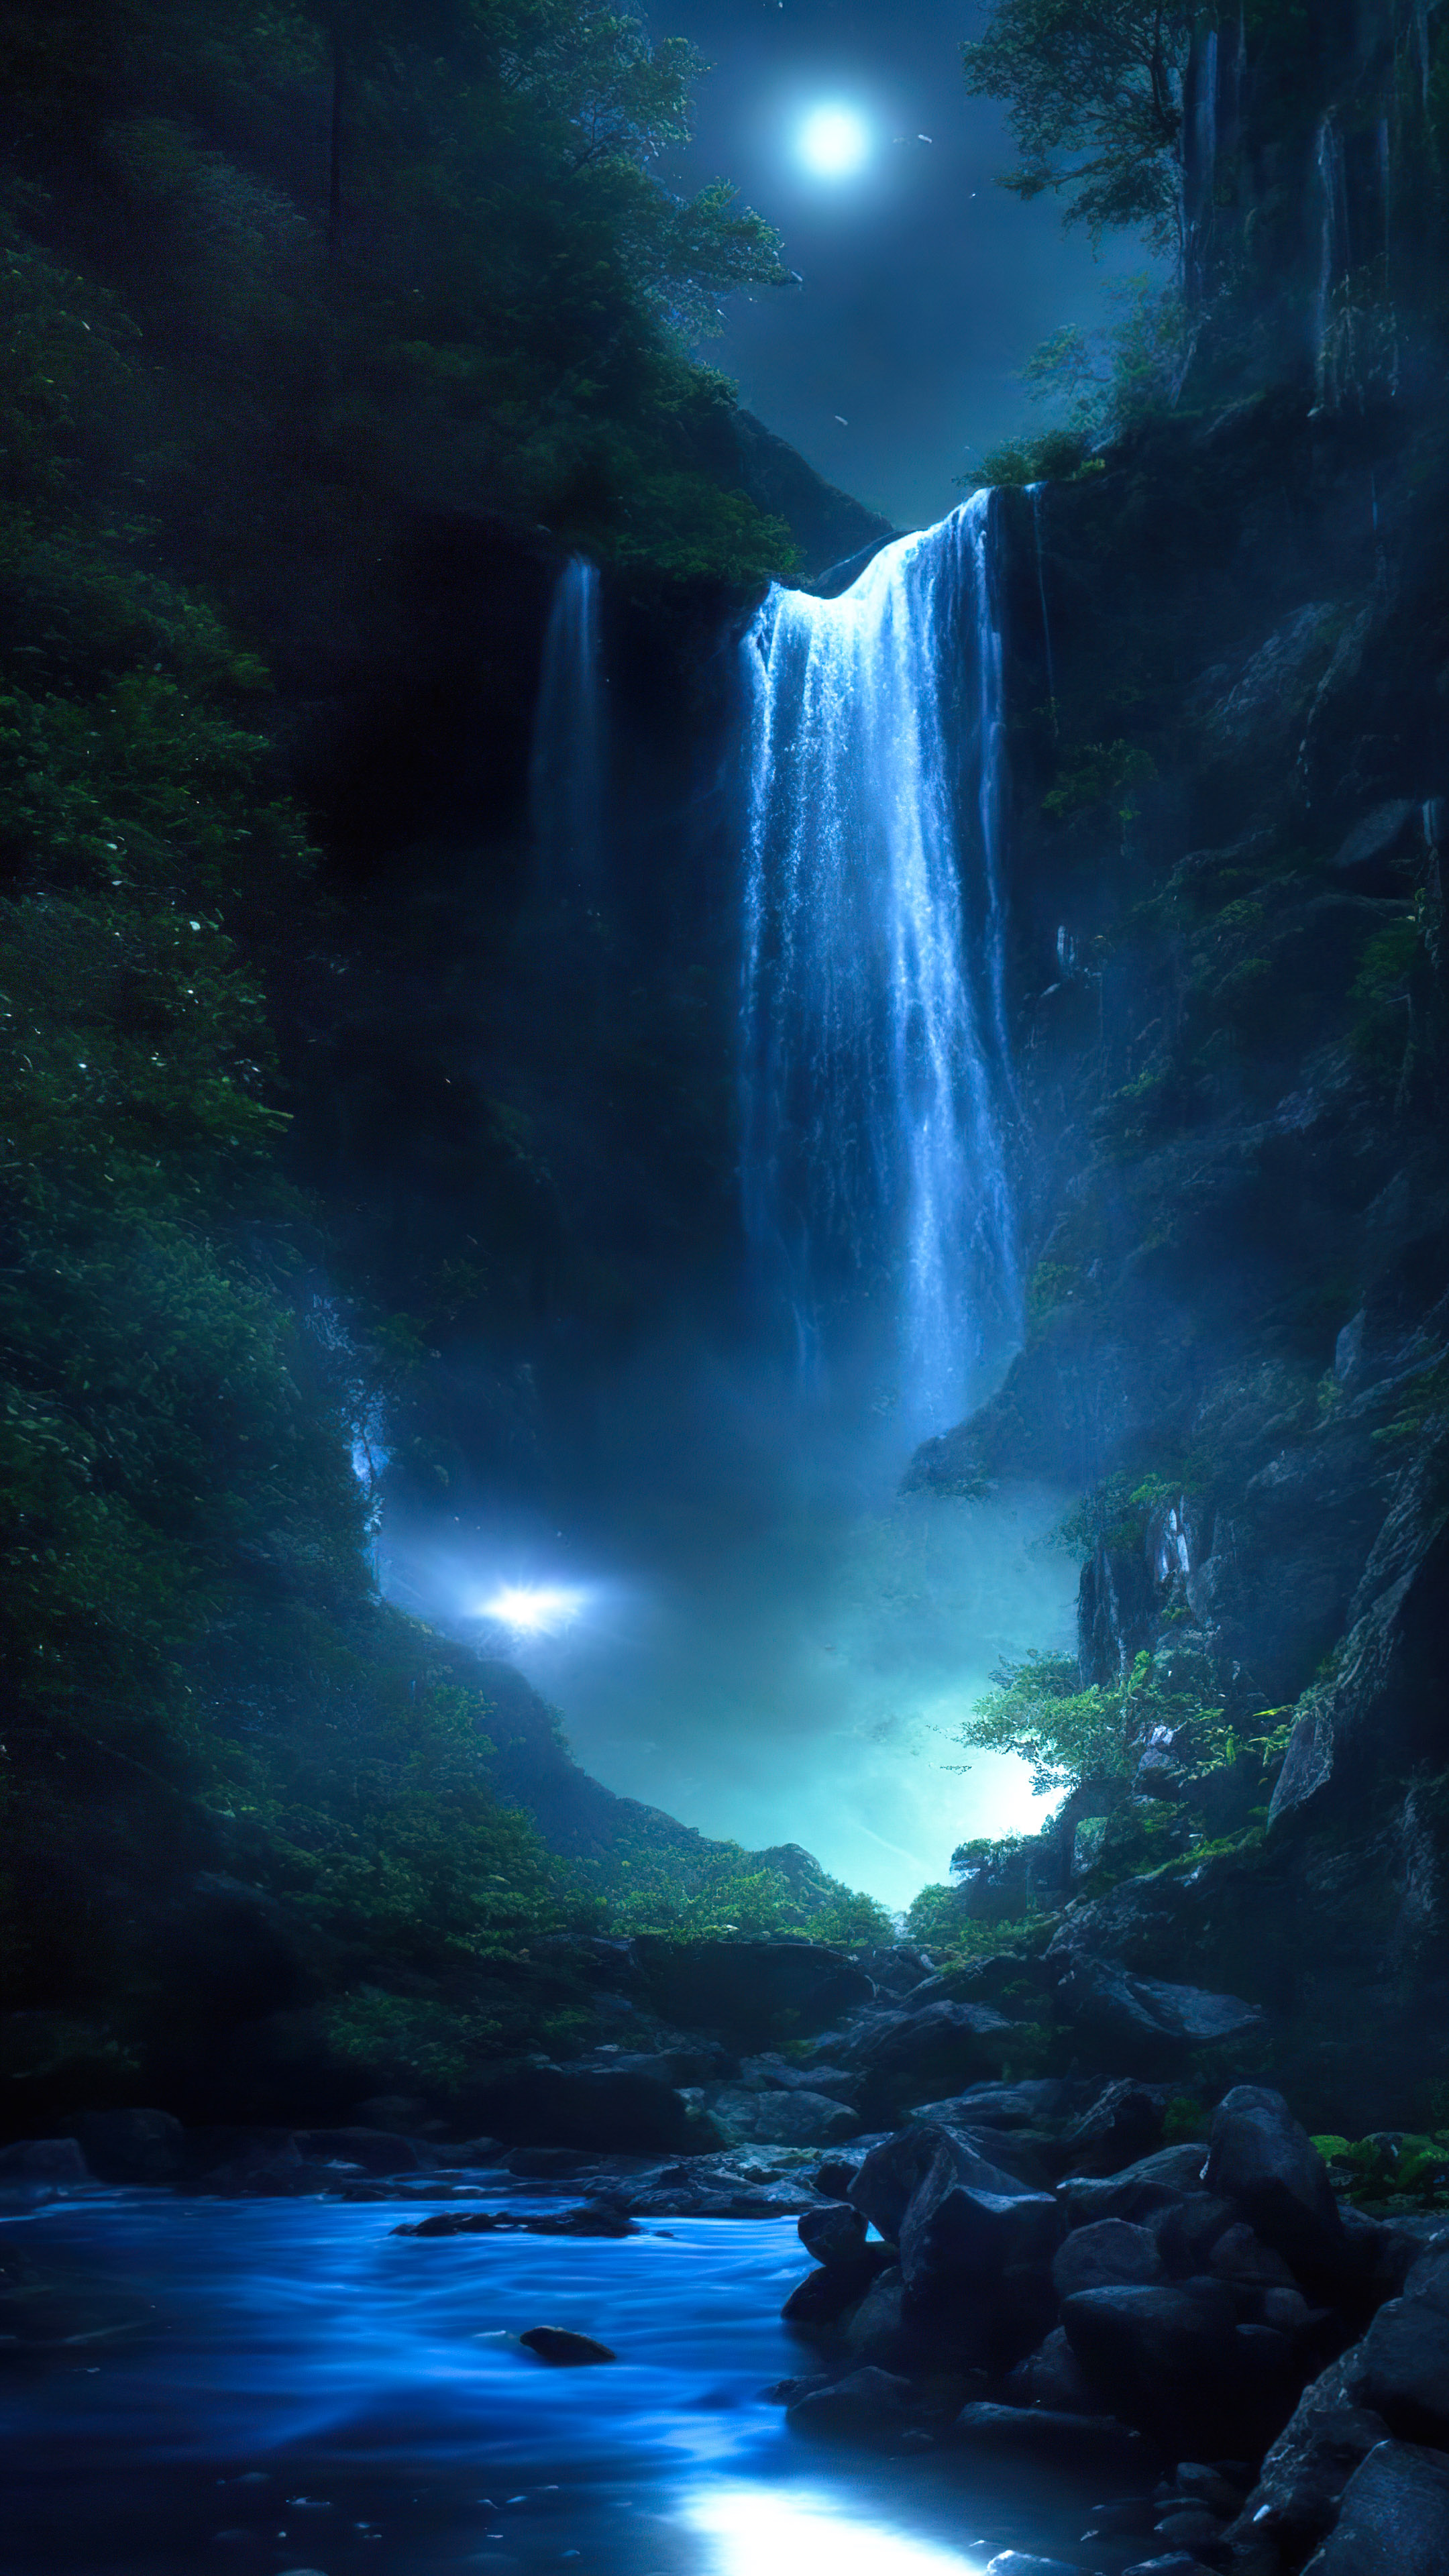 Capturez l'essence du paradis avec notre beau fond d'écran de cascade, présentant une cascade magique illuminée par le clair de lune, avec des lucioles dansant autour de ses eaux en cascade.